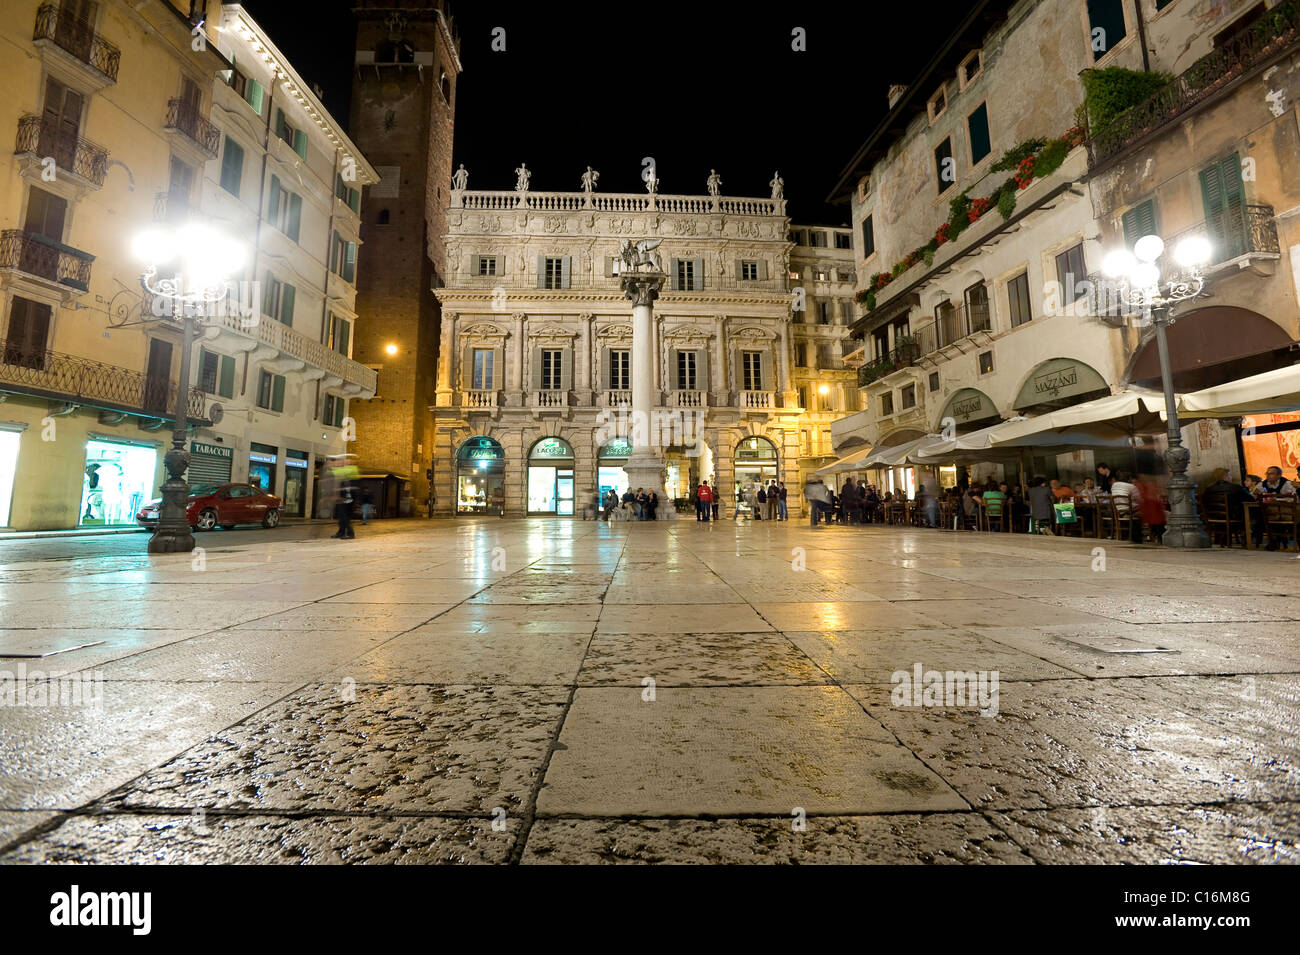 Piazza delle Erbe, historic centre of Verona, Italy, Europe Stock Photo